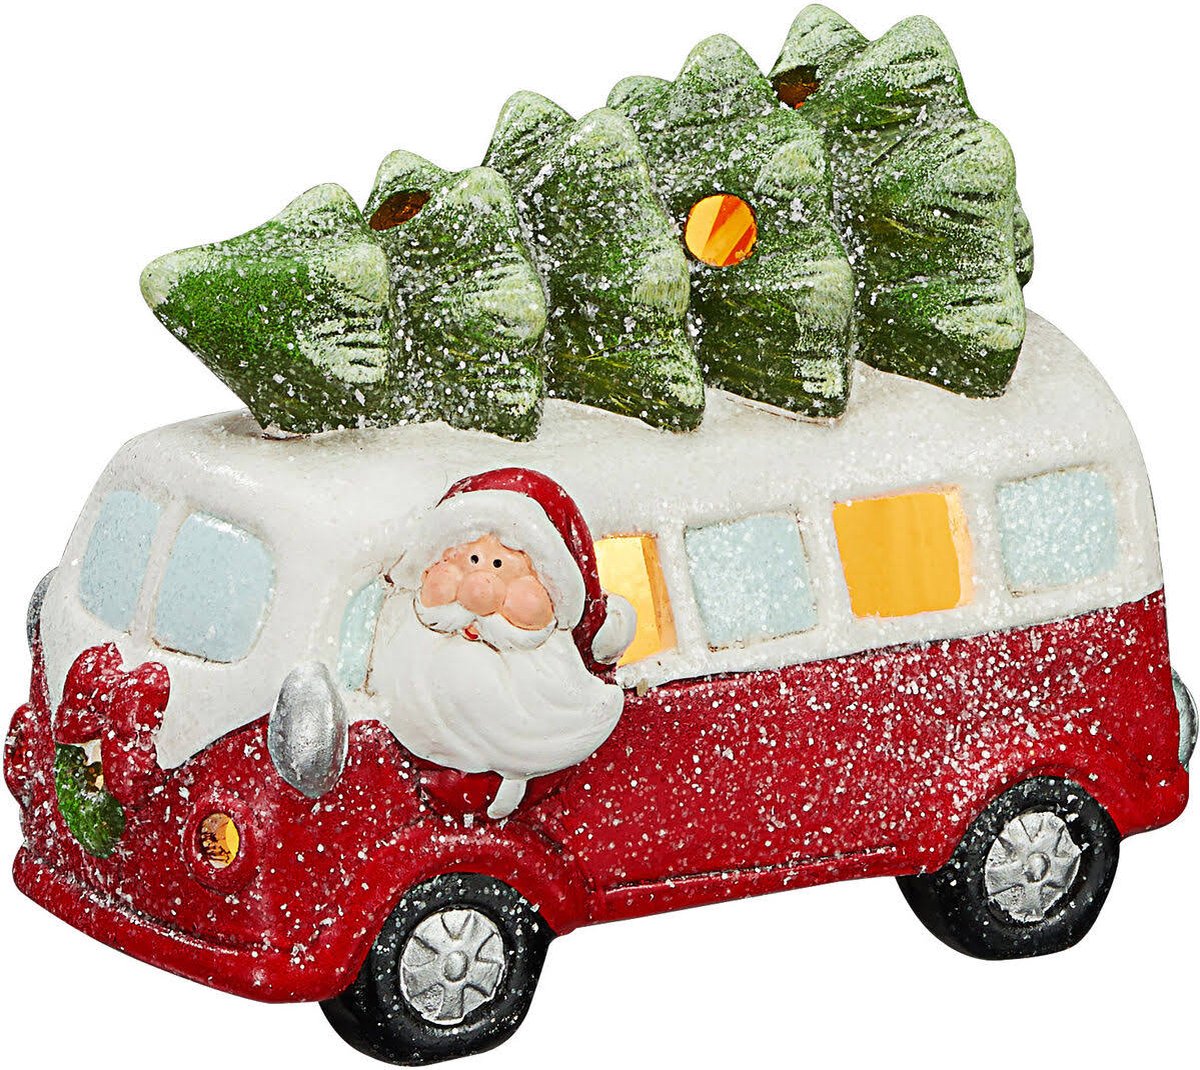 Kristmar Bus met Kerstboom - Kerstversiering - Kerstdecoratie - Met LED-verlichting - B21xH16.5xD11 cm - Inclusief batterijen - Keramiek - Rood/Wit/Groen